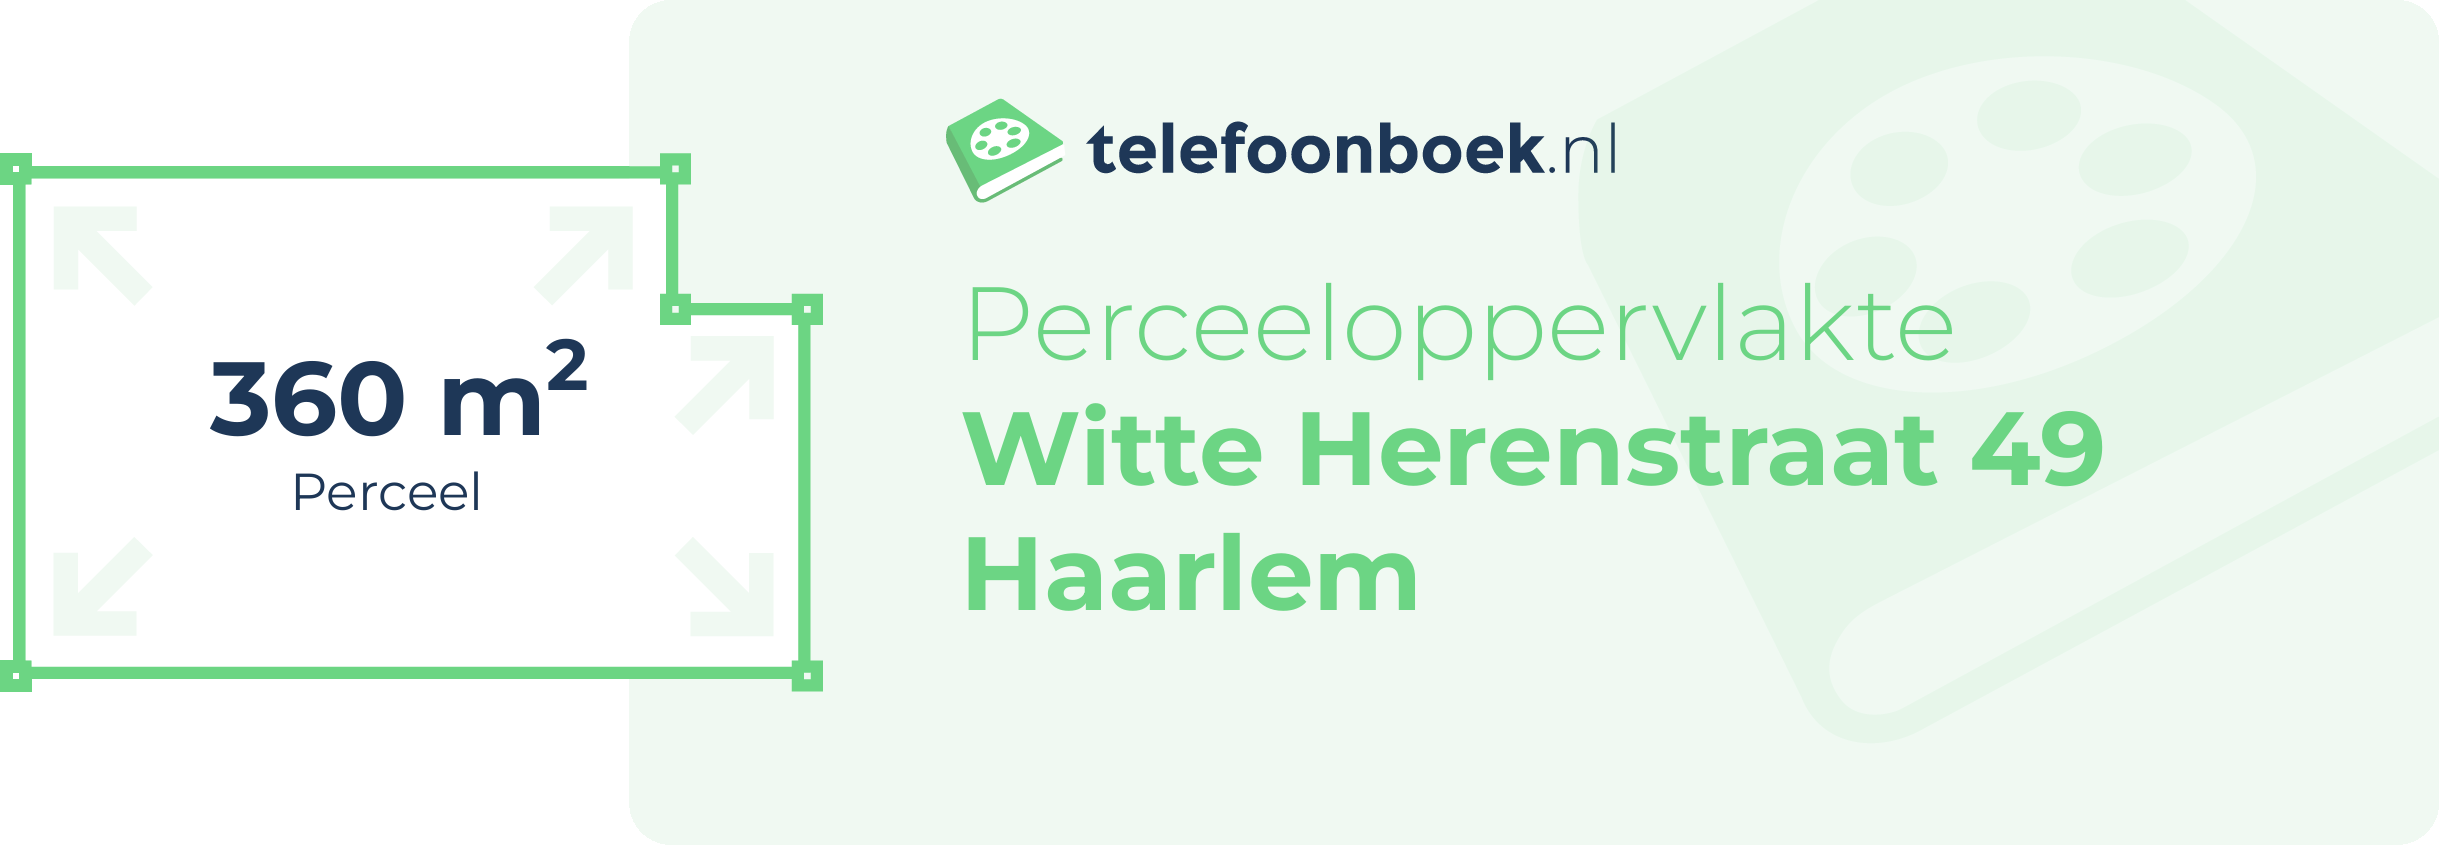 Perceeloppervlakte Witte Herenstraat 49 Haarlem